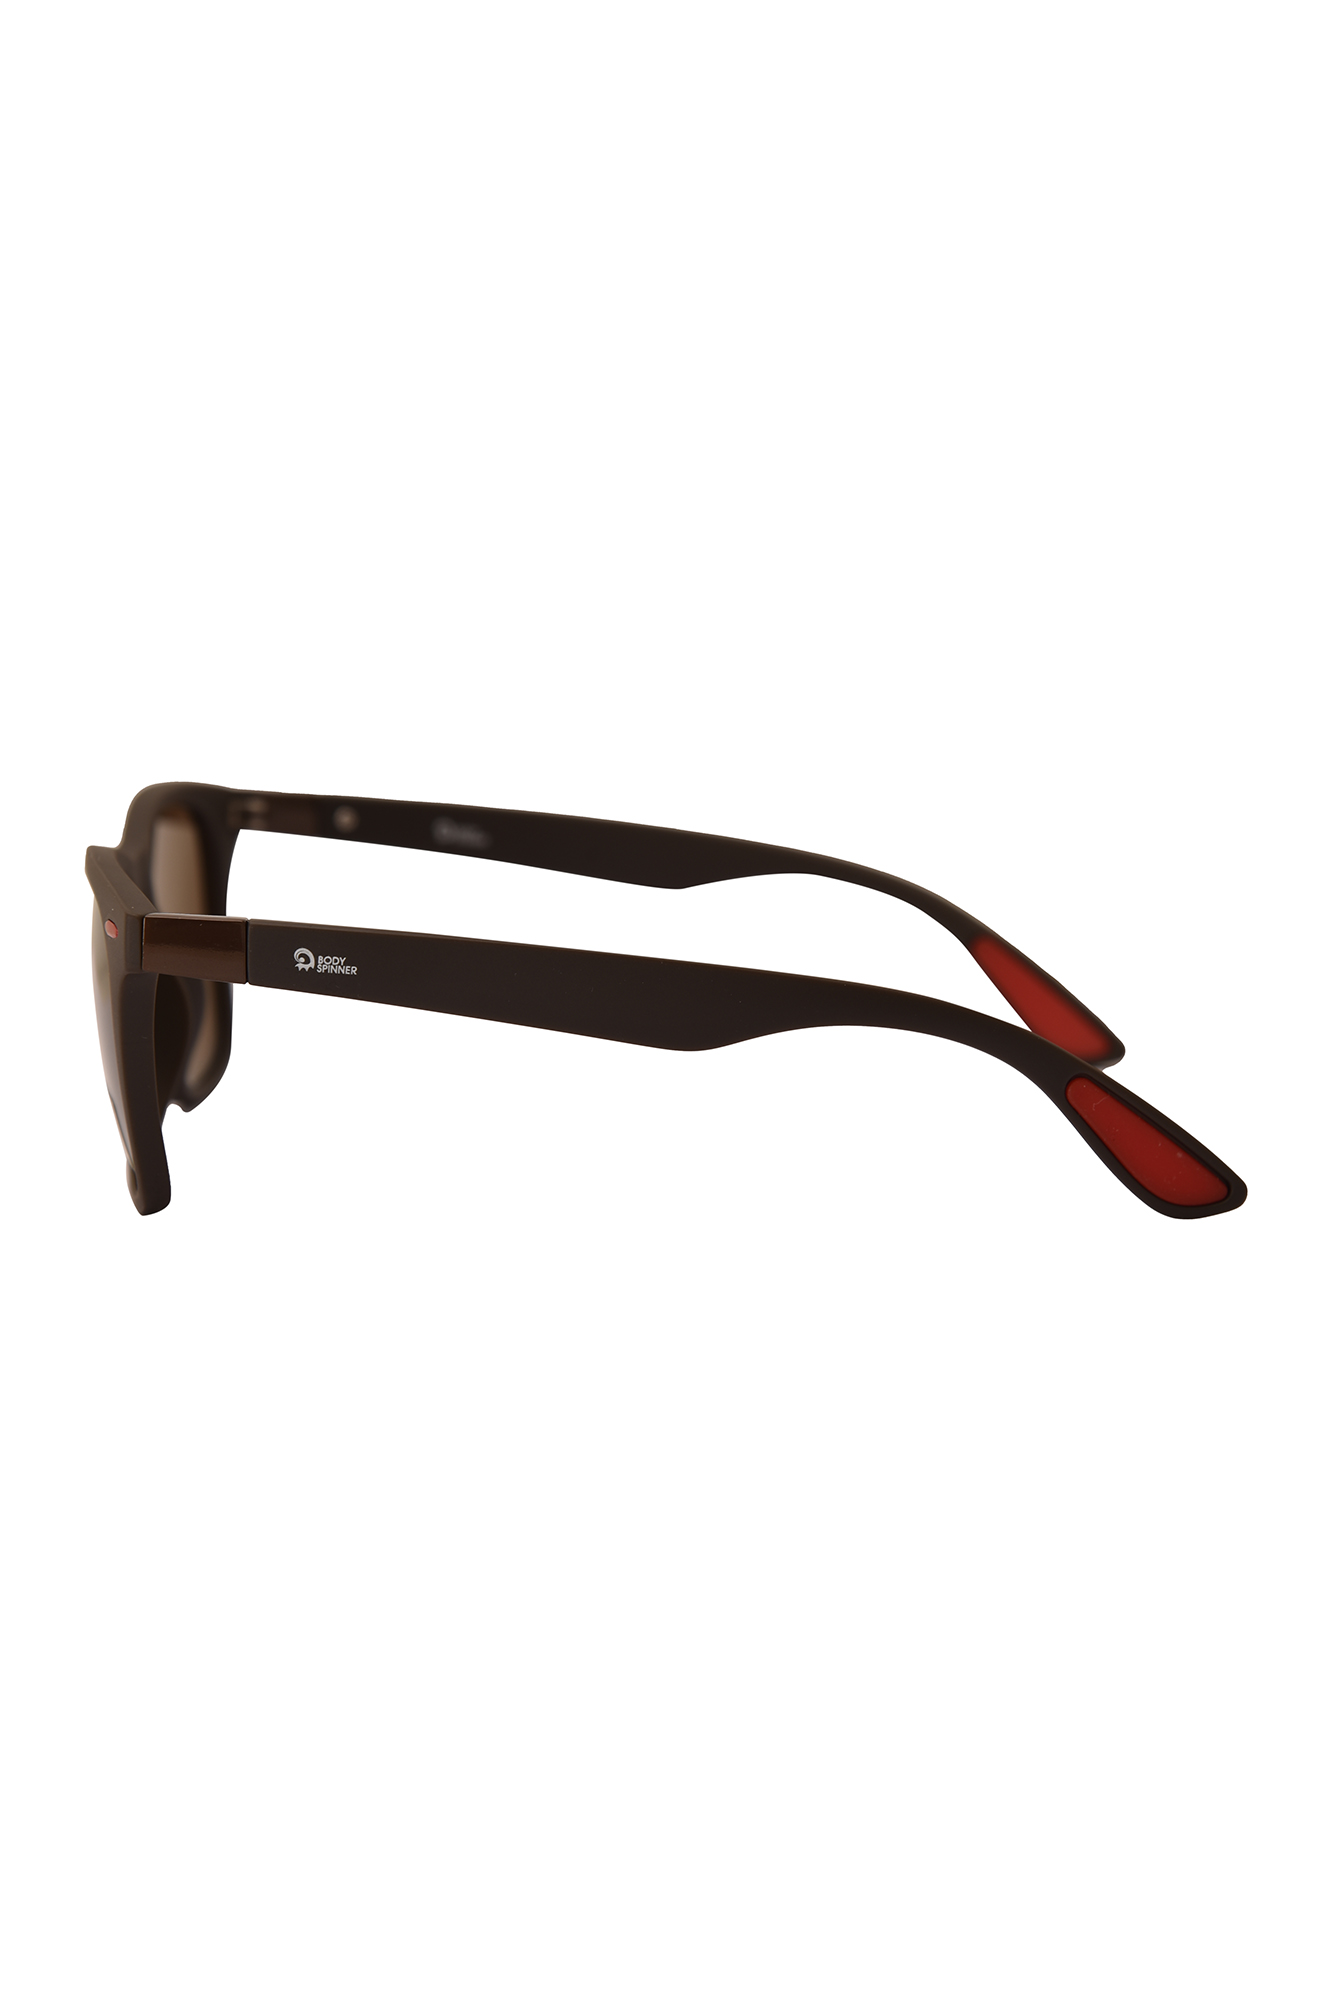 عینکpolarized sunglasses